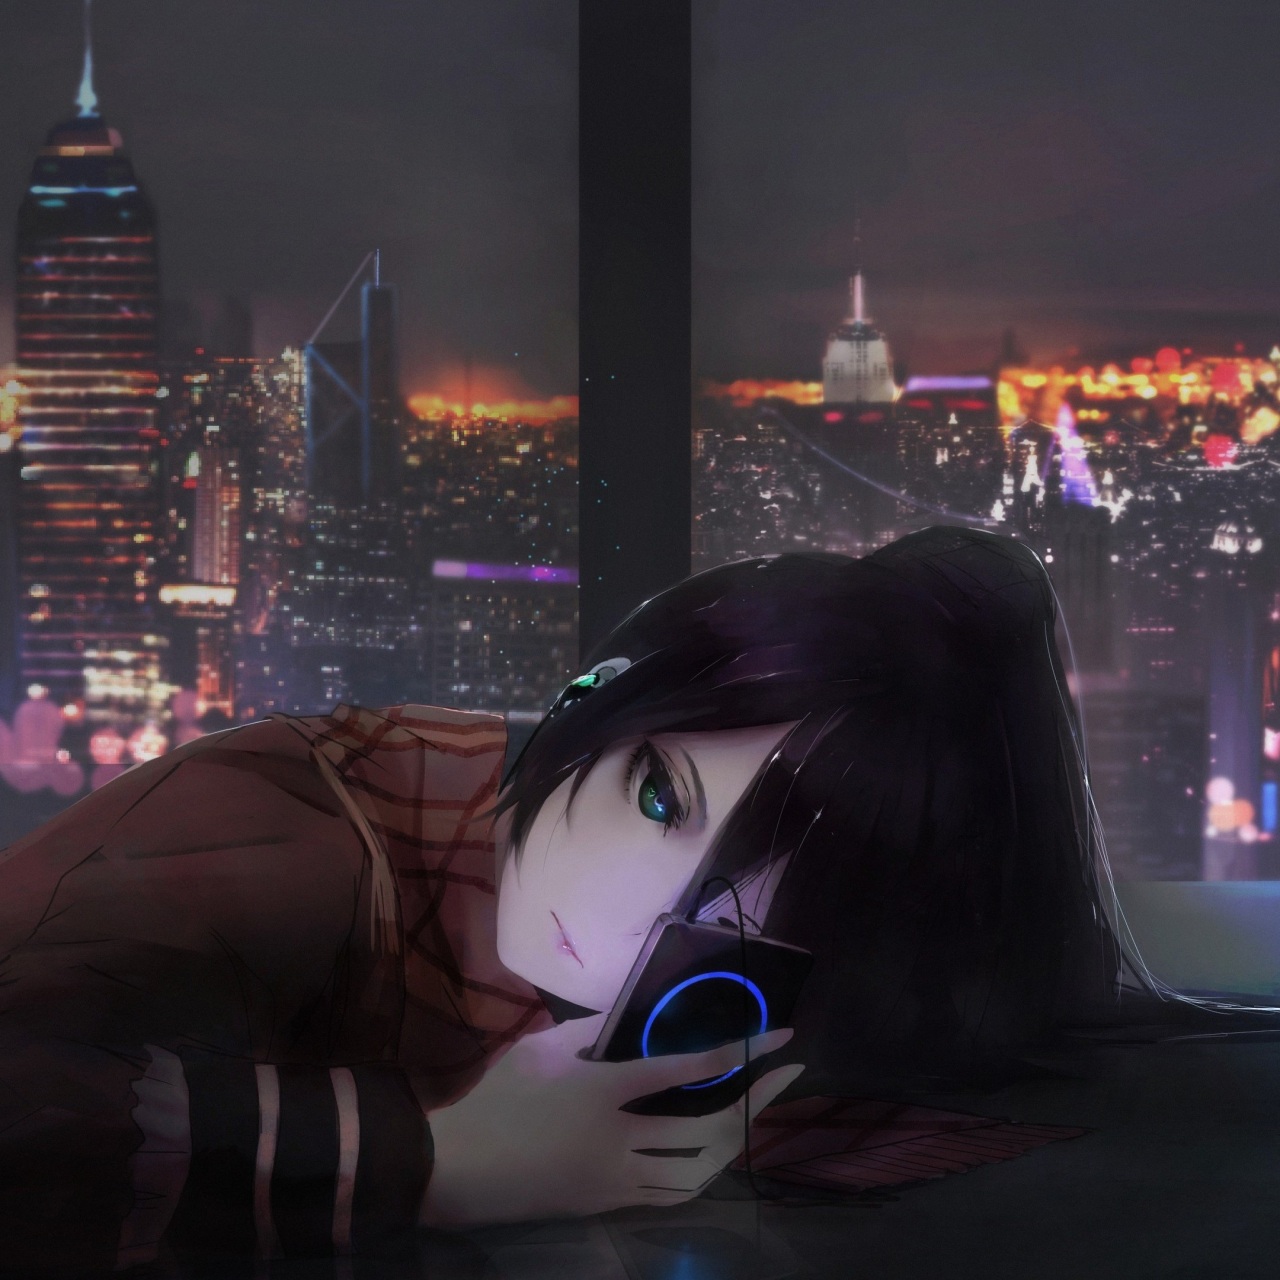 Wallpaper 4k Anime Girl Listening Music On Ipod Wallpaper